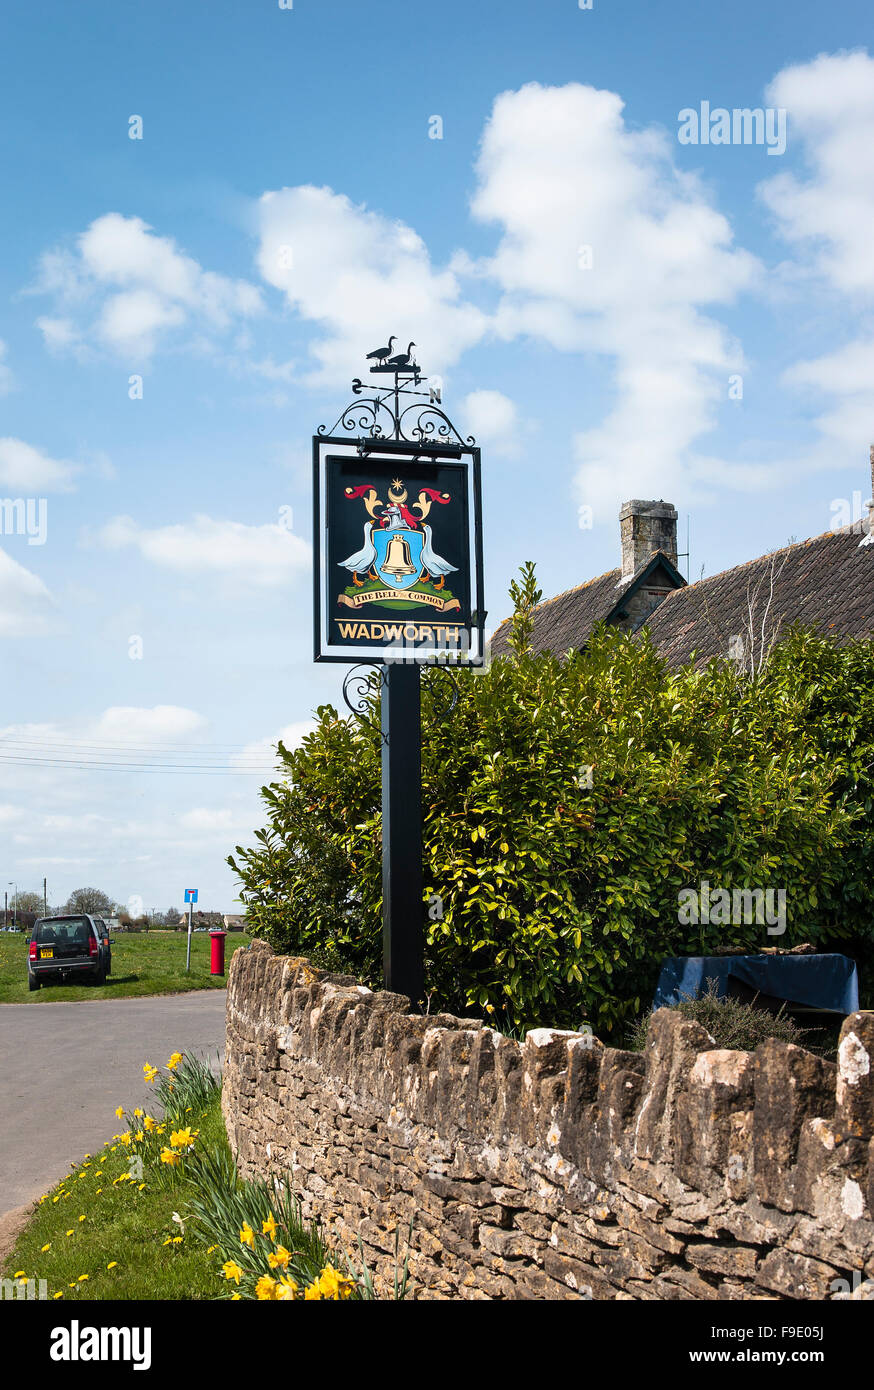 Wadworth Inn anmelden "The Bell auf dem gemeinsamen" Broughton Gifford Wiltshire uk eu Stockfoto